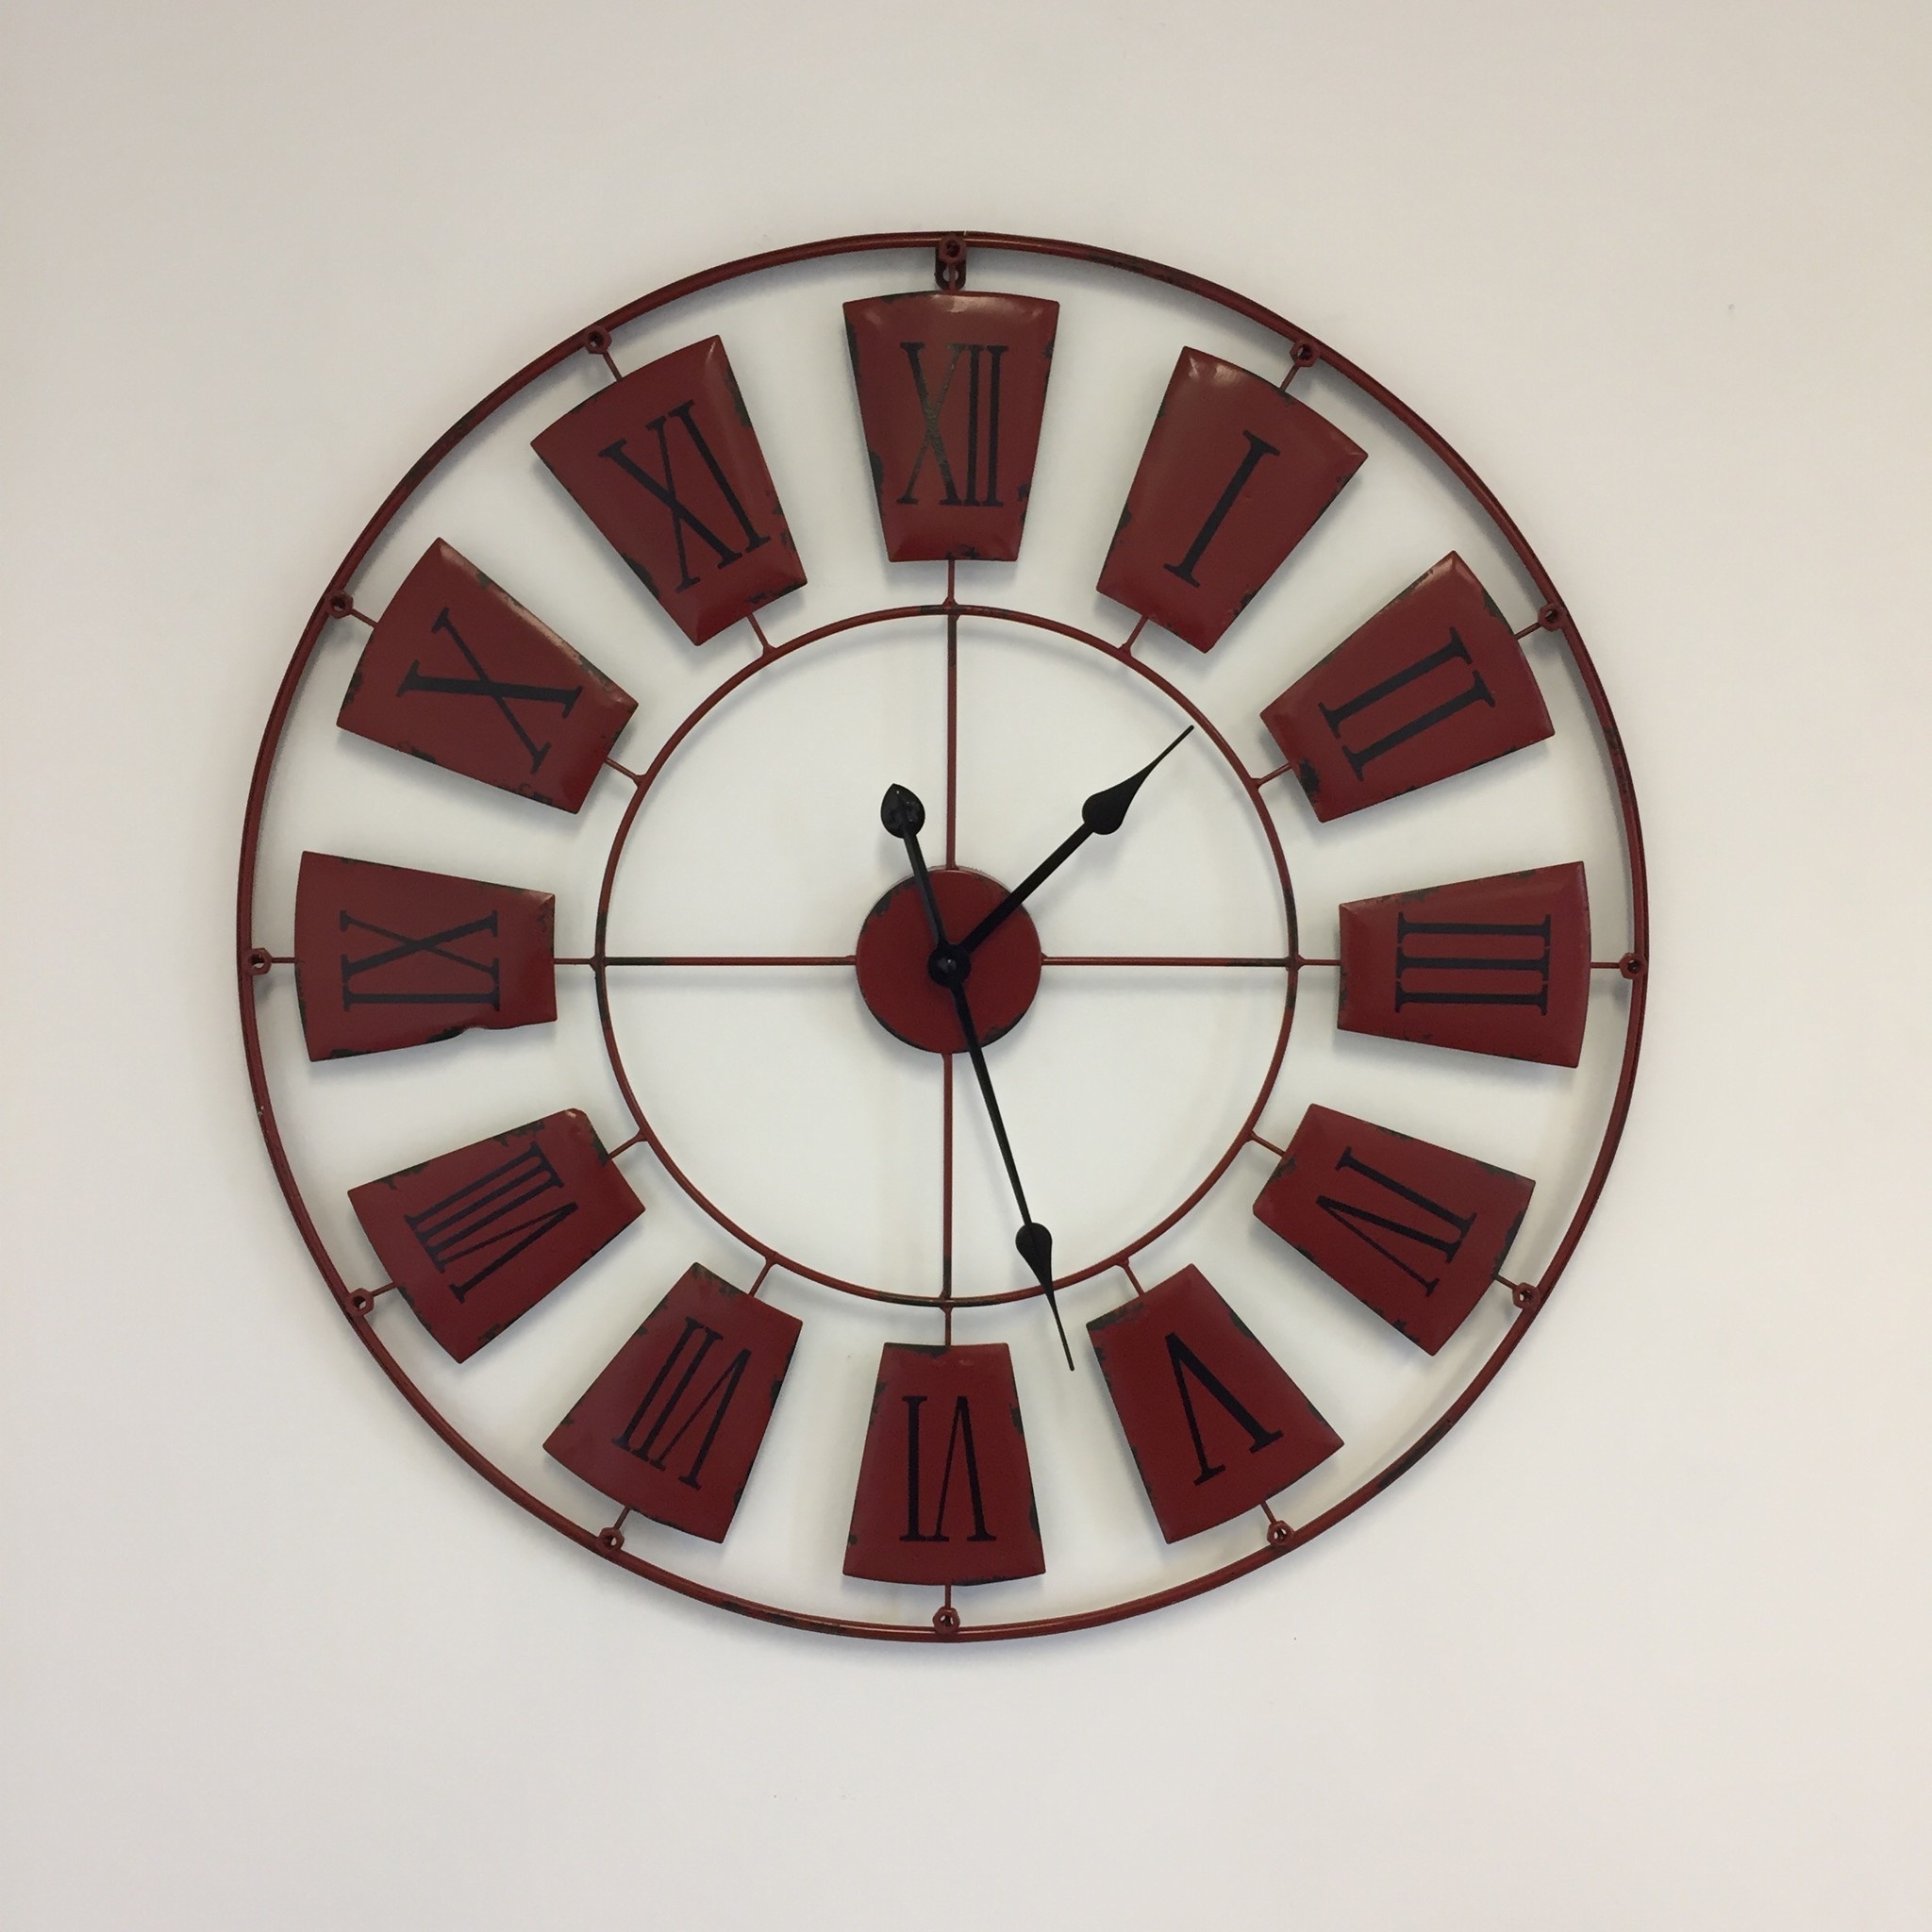 NiceTime Design - Wall clock Industrial Wheel Vintage Red